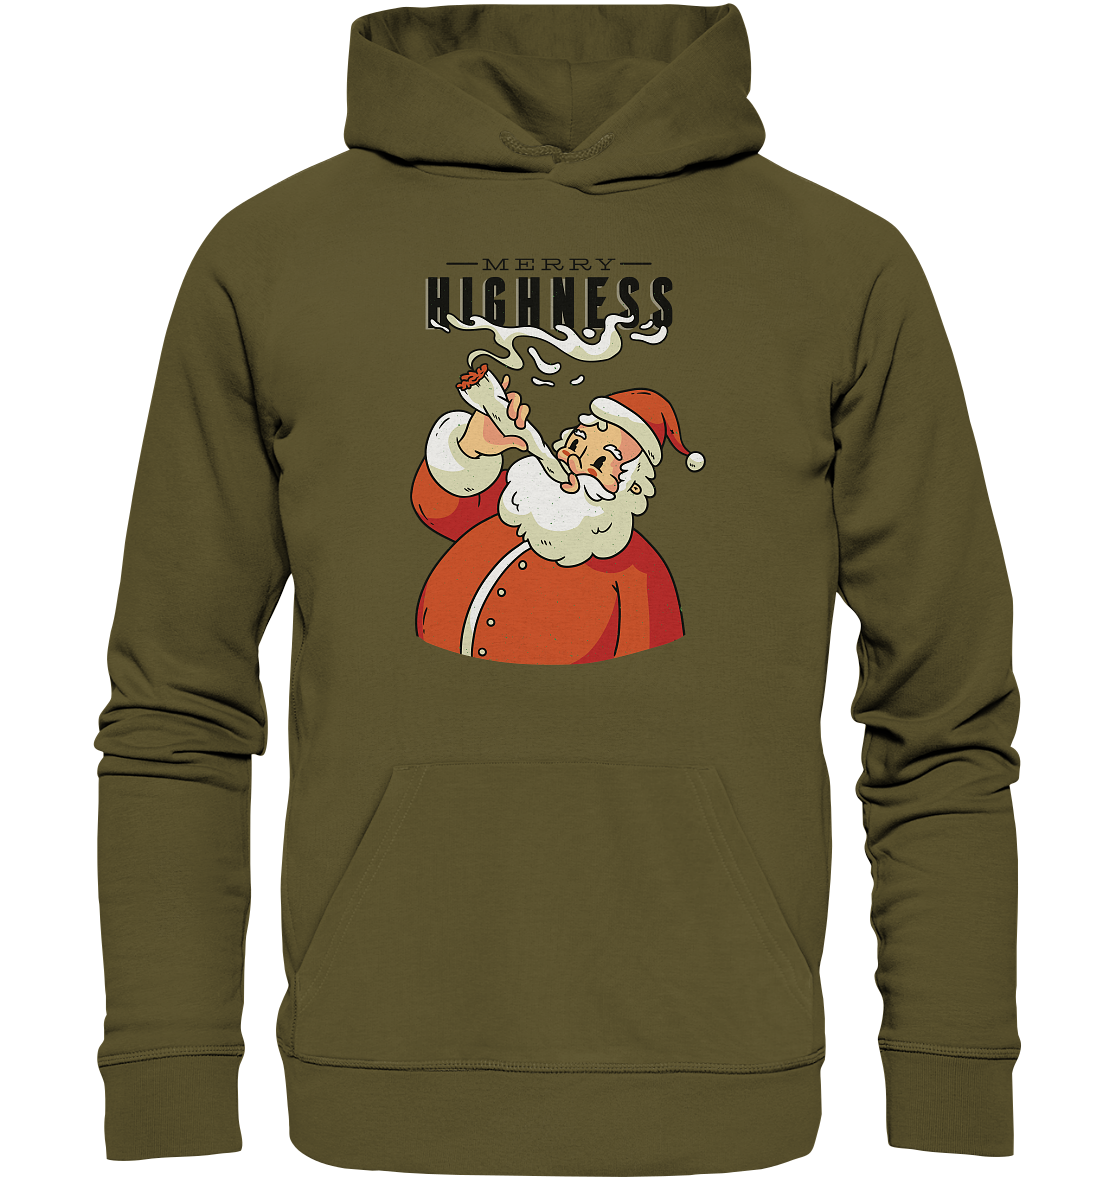 Weihnachten Kiffender Weihnachtsmann Nikolaus Merry Highness - Organic Hoodie